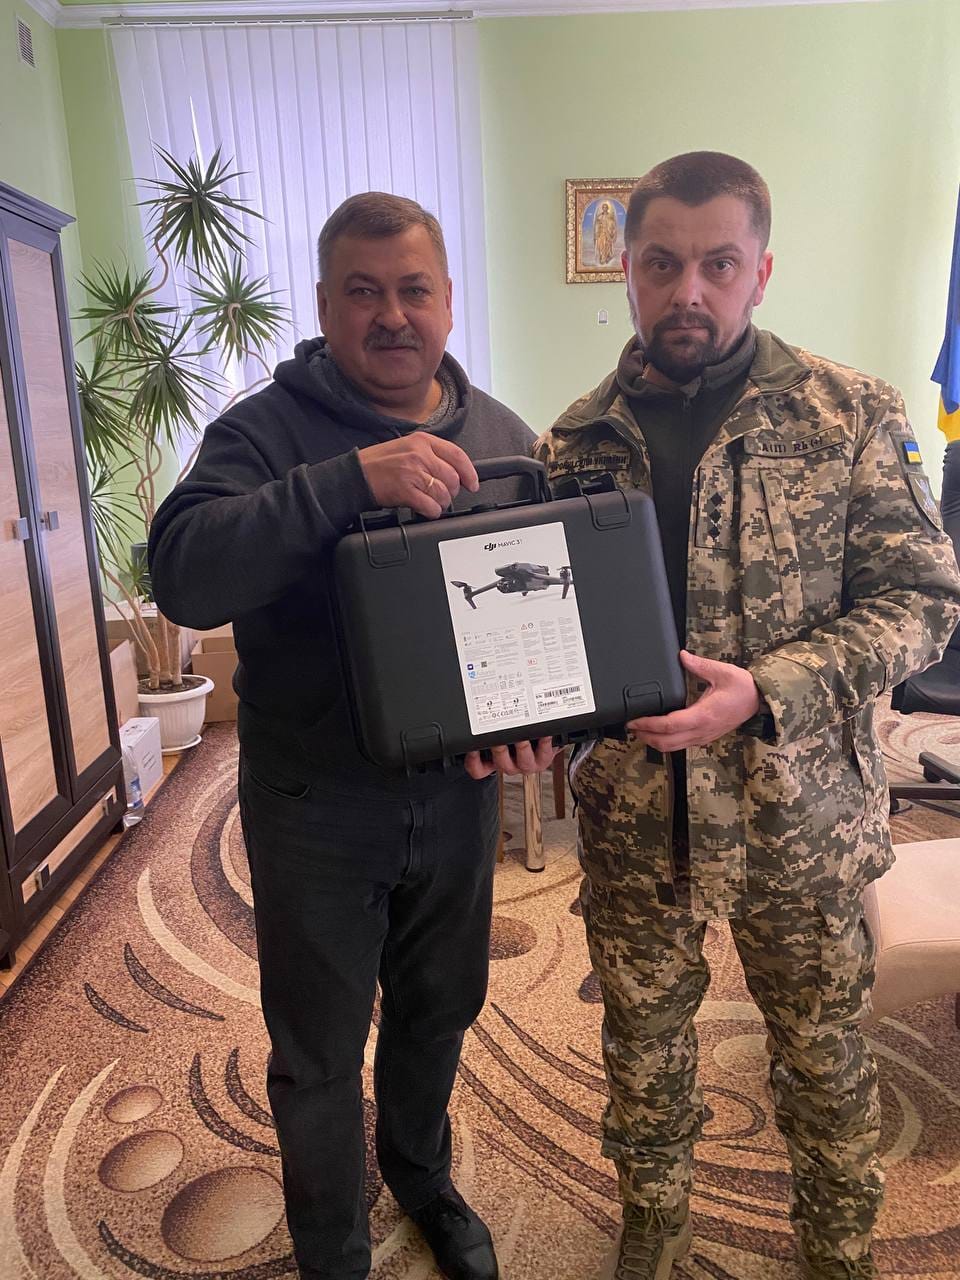 Військові віддячили Городенці за переданий коптер оригінальним подарунком (ФОТО)